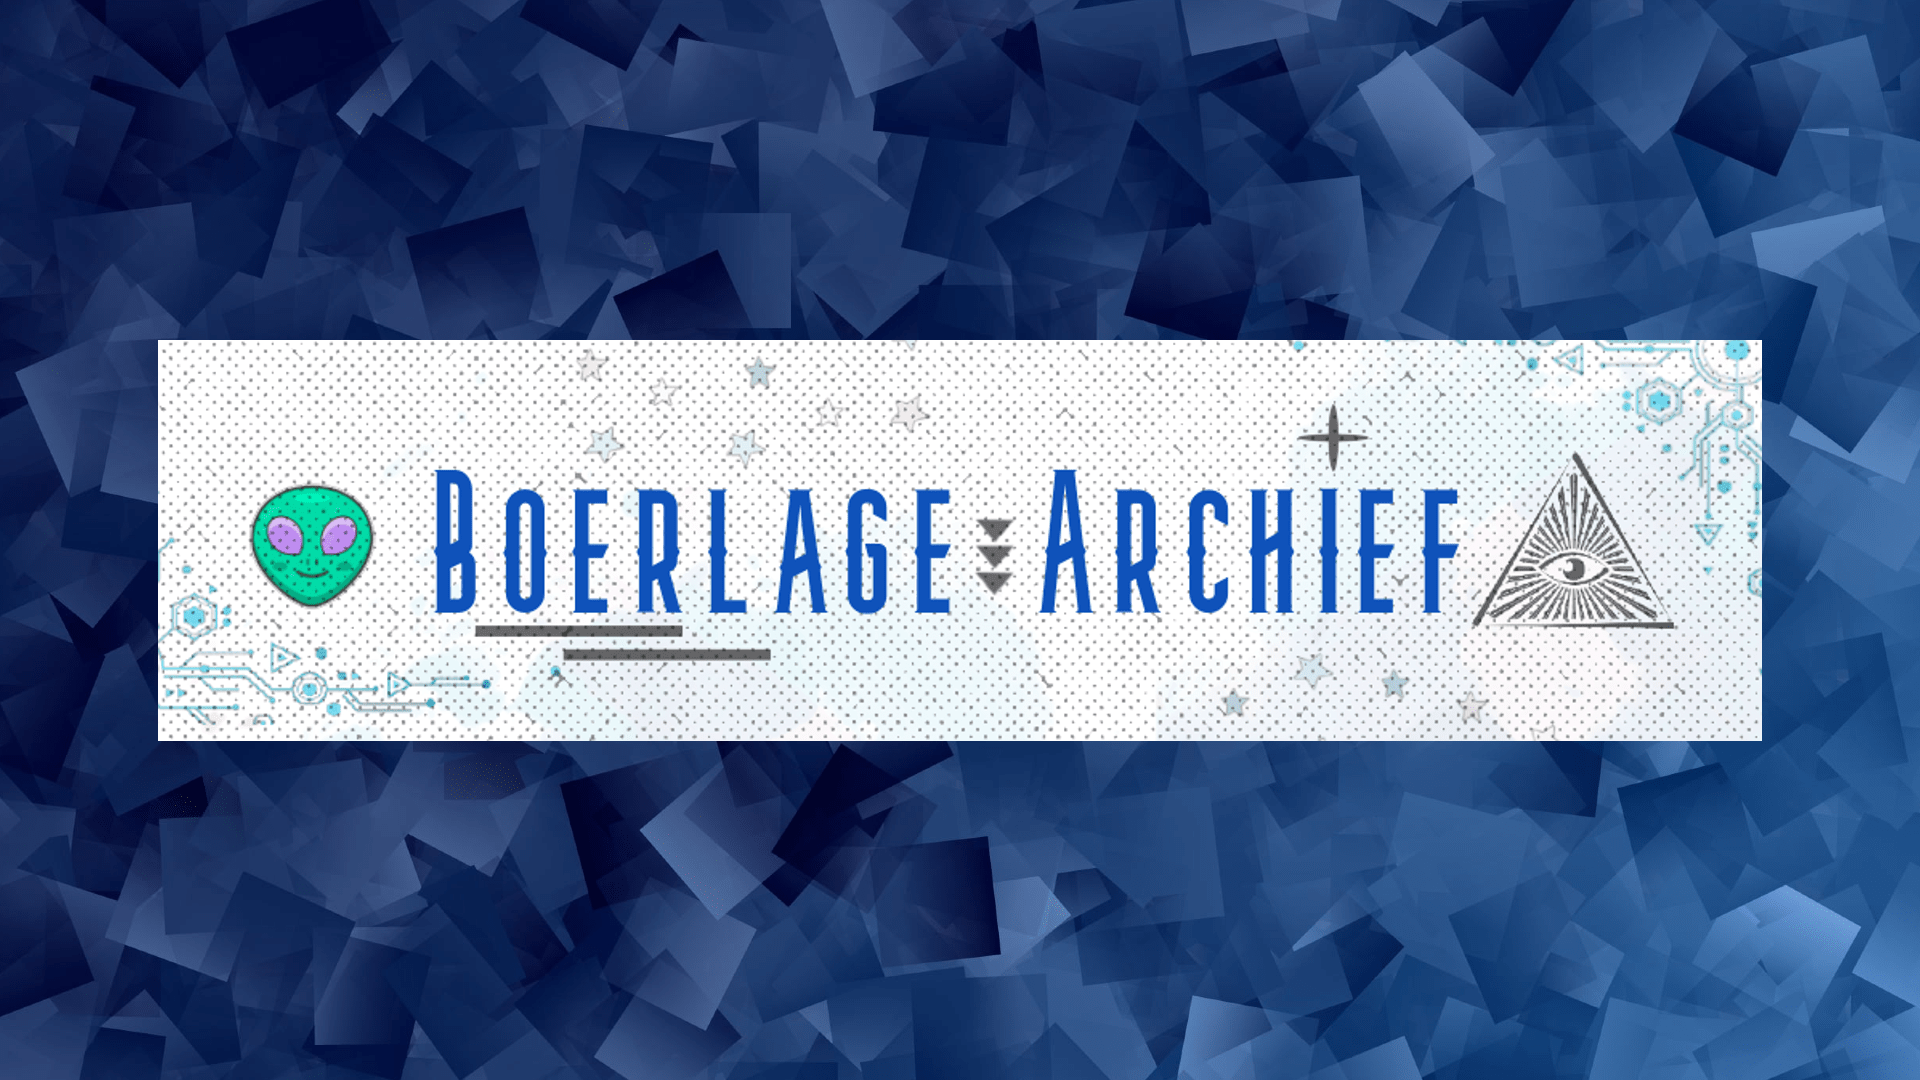 Logo website Boerlage archief met punt patroon en diverse vormen zoals een driehoek en lijn. Groen gezicht alien naast de tekst.